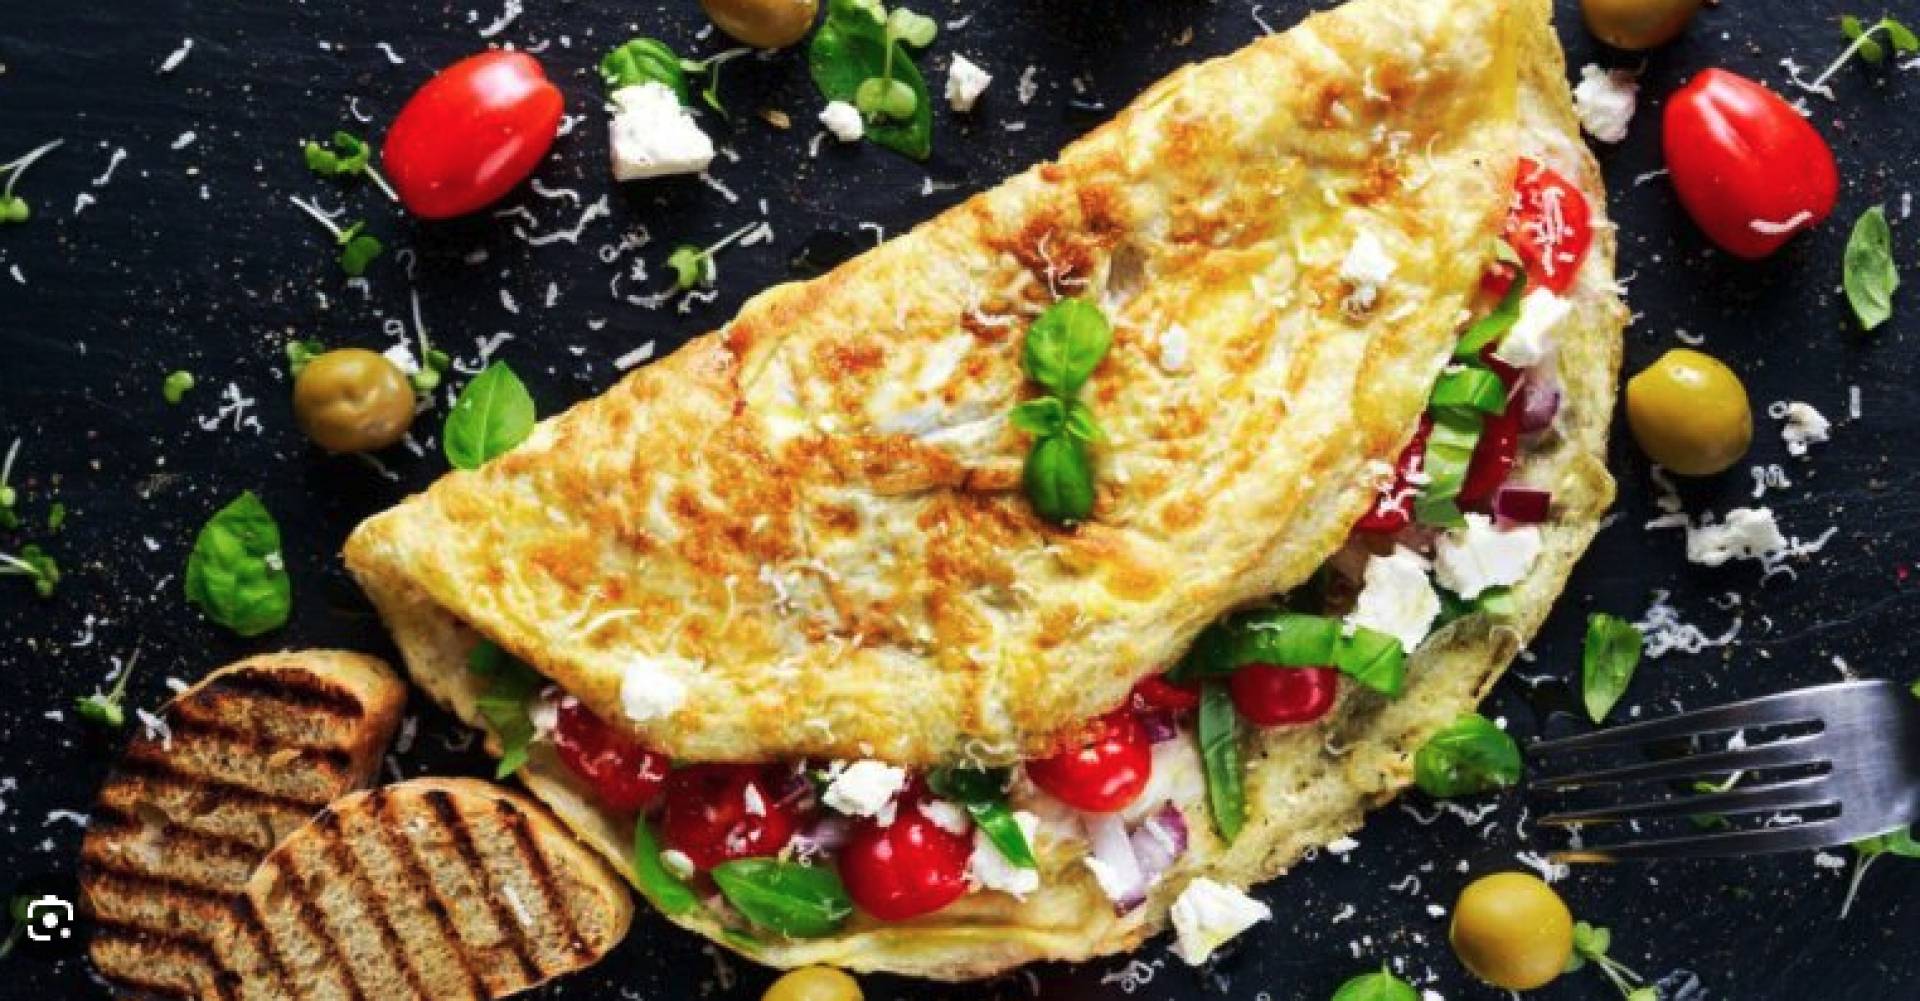 The Greek Omelette (Breakfast)